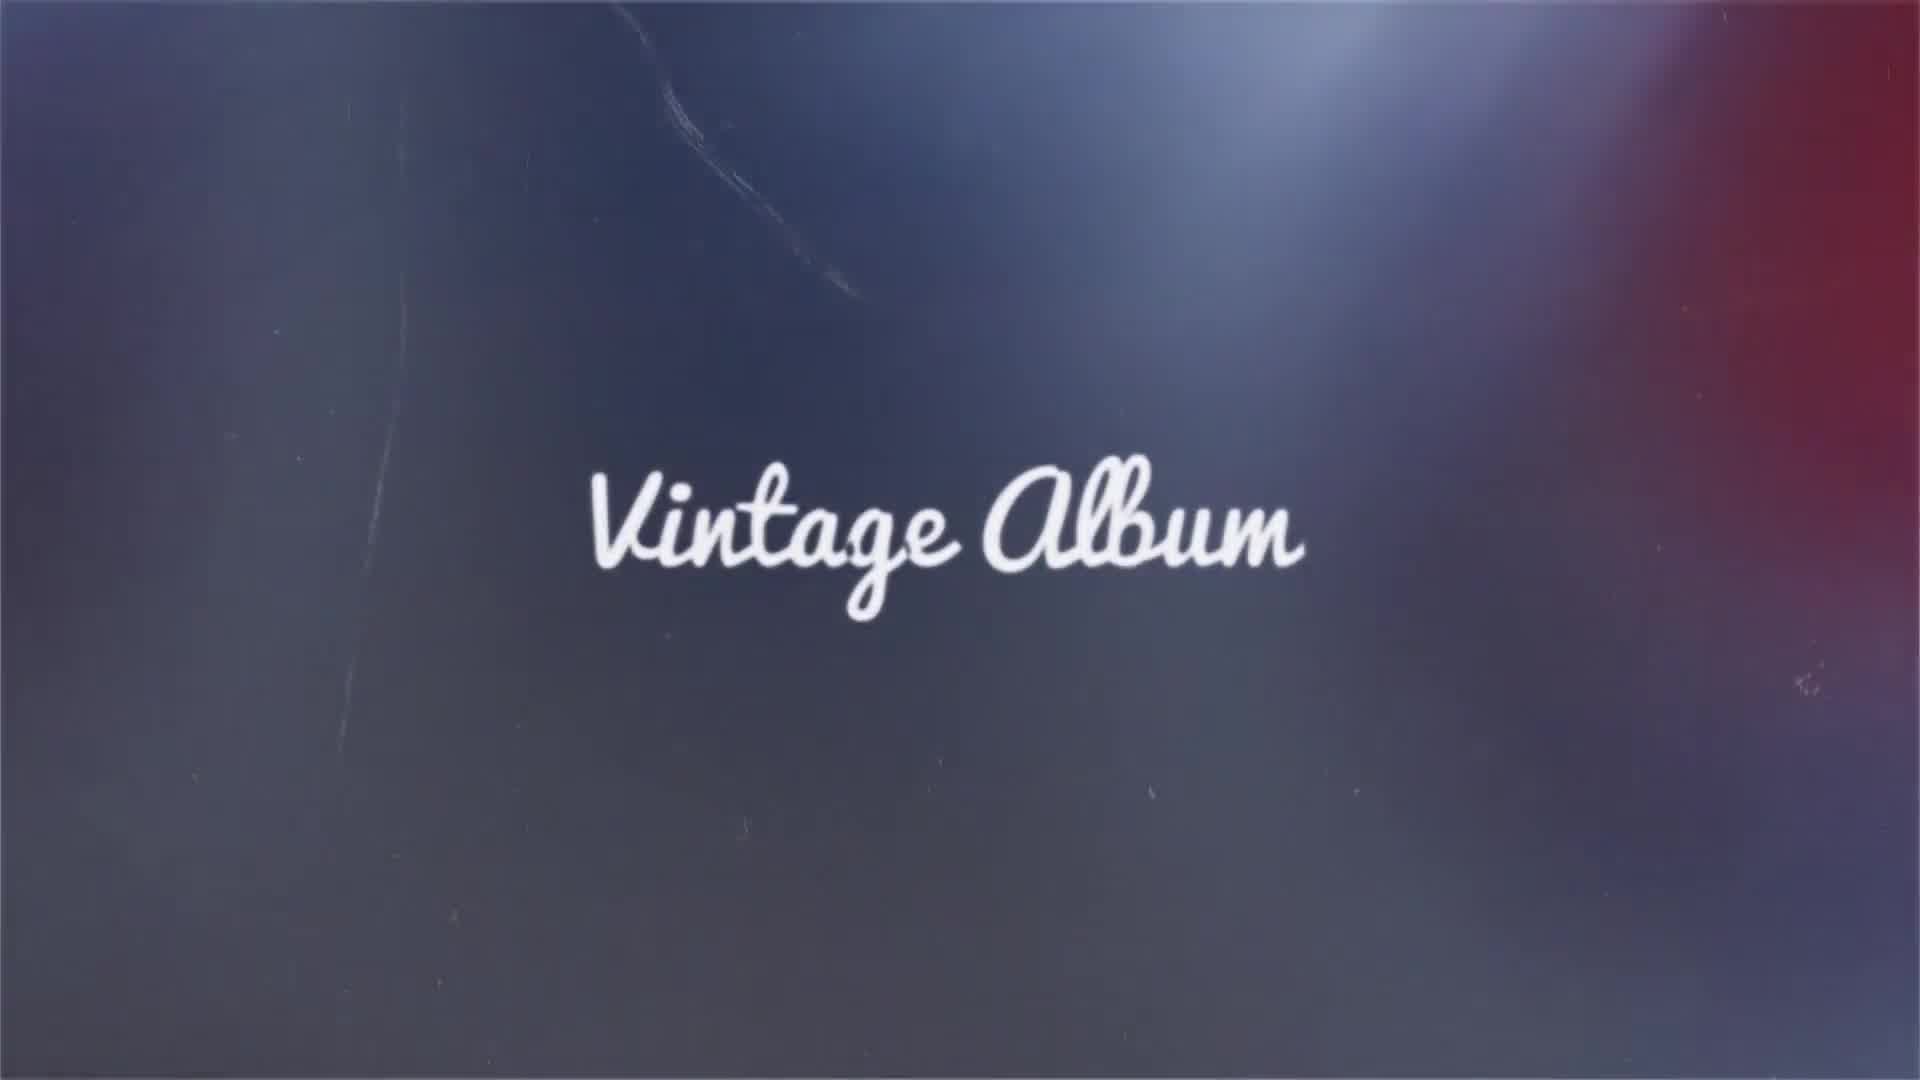 Vintage Album Videohive 22826685 Premiere Pro Image 12